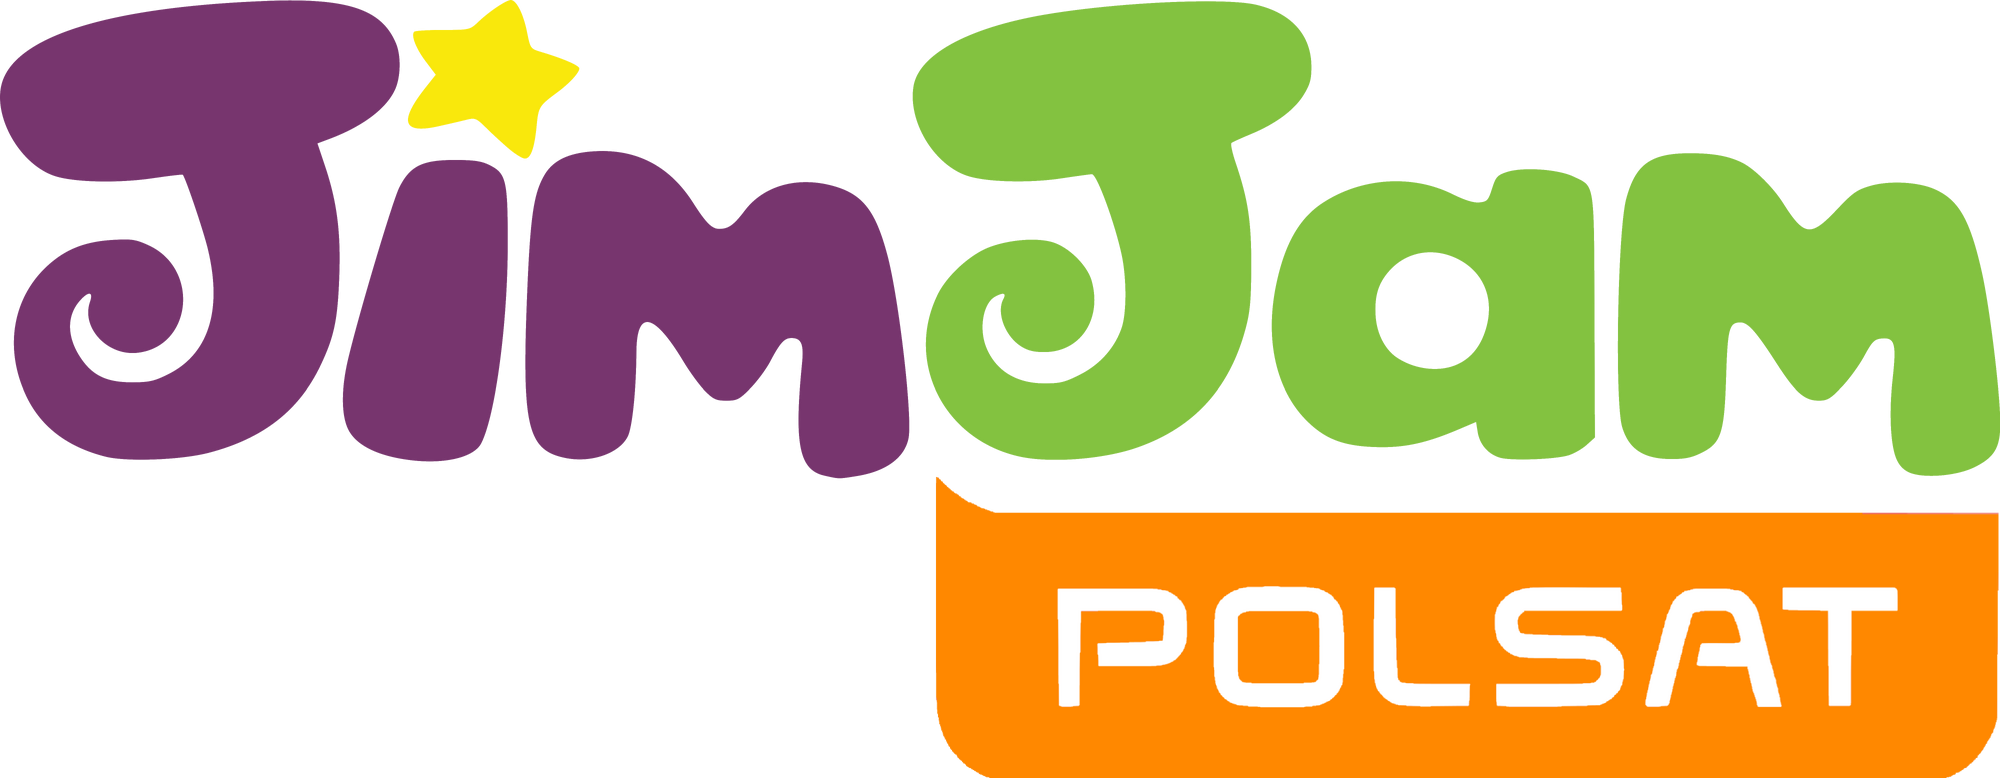 Телеканал Джим Джам. JIMJAM Polsat logo. Телеканал JIMJAM логотип. Детские каналы. Телеканалы джем